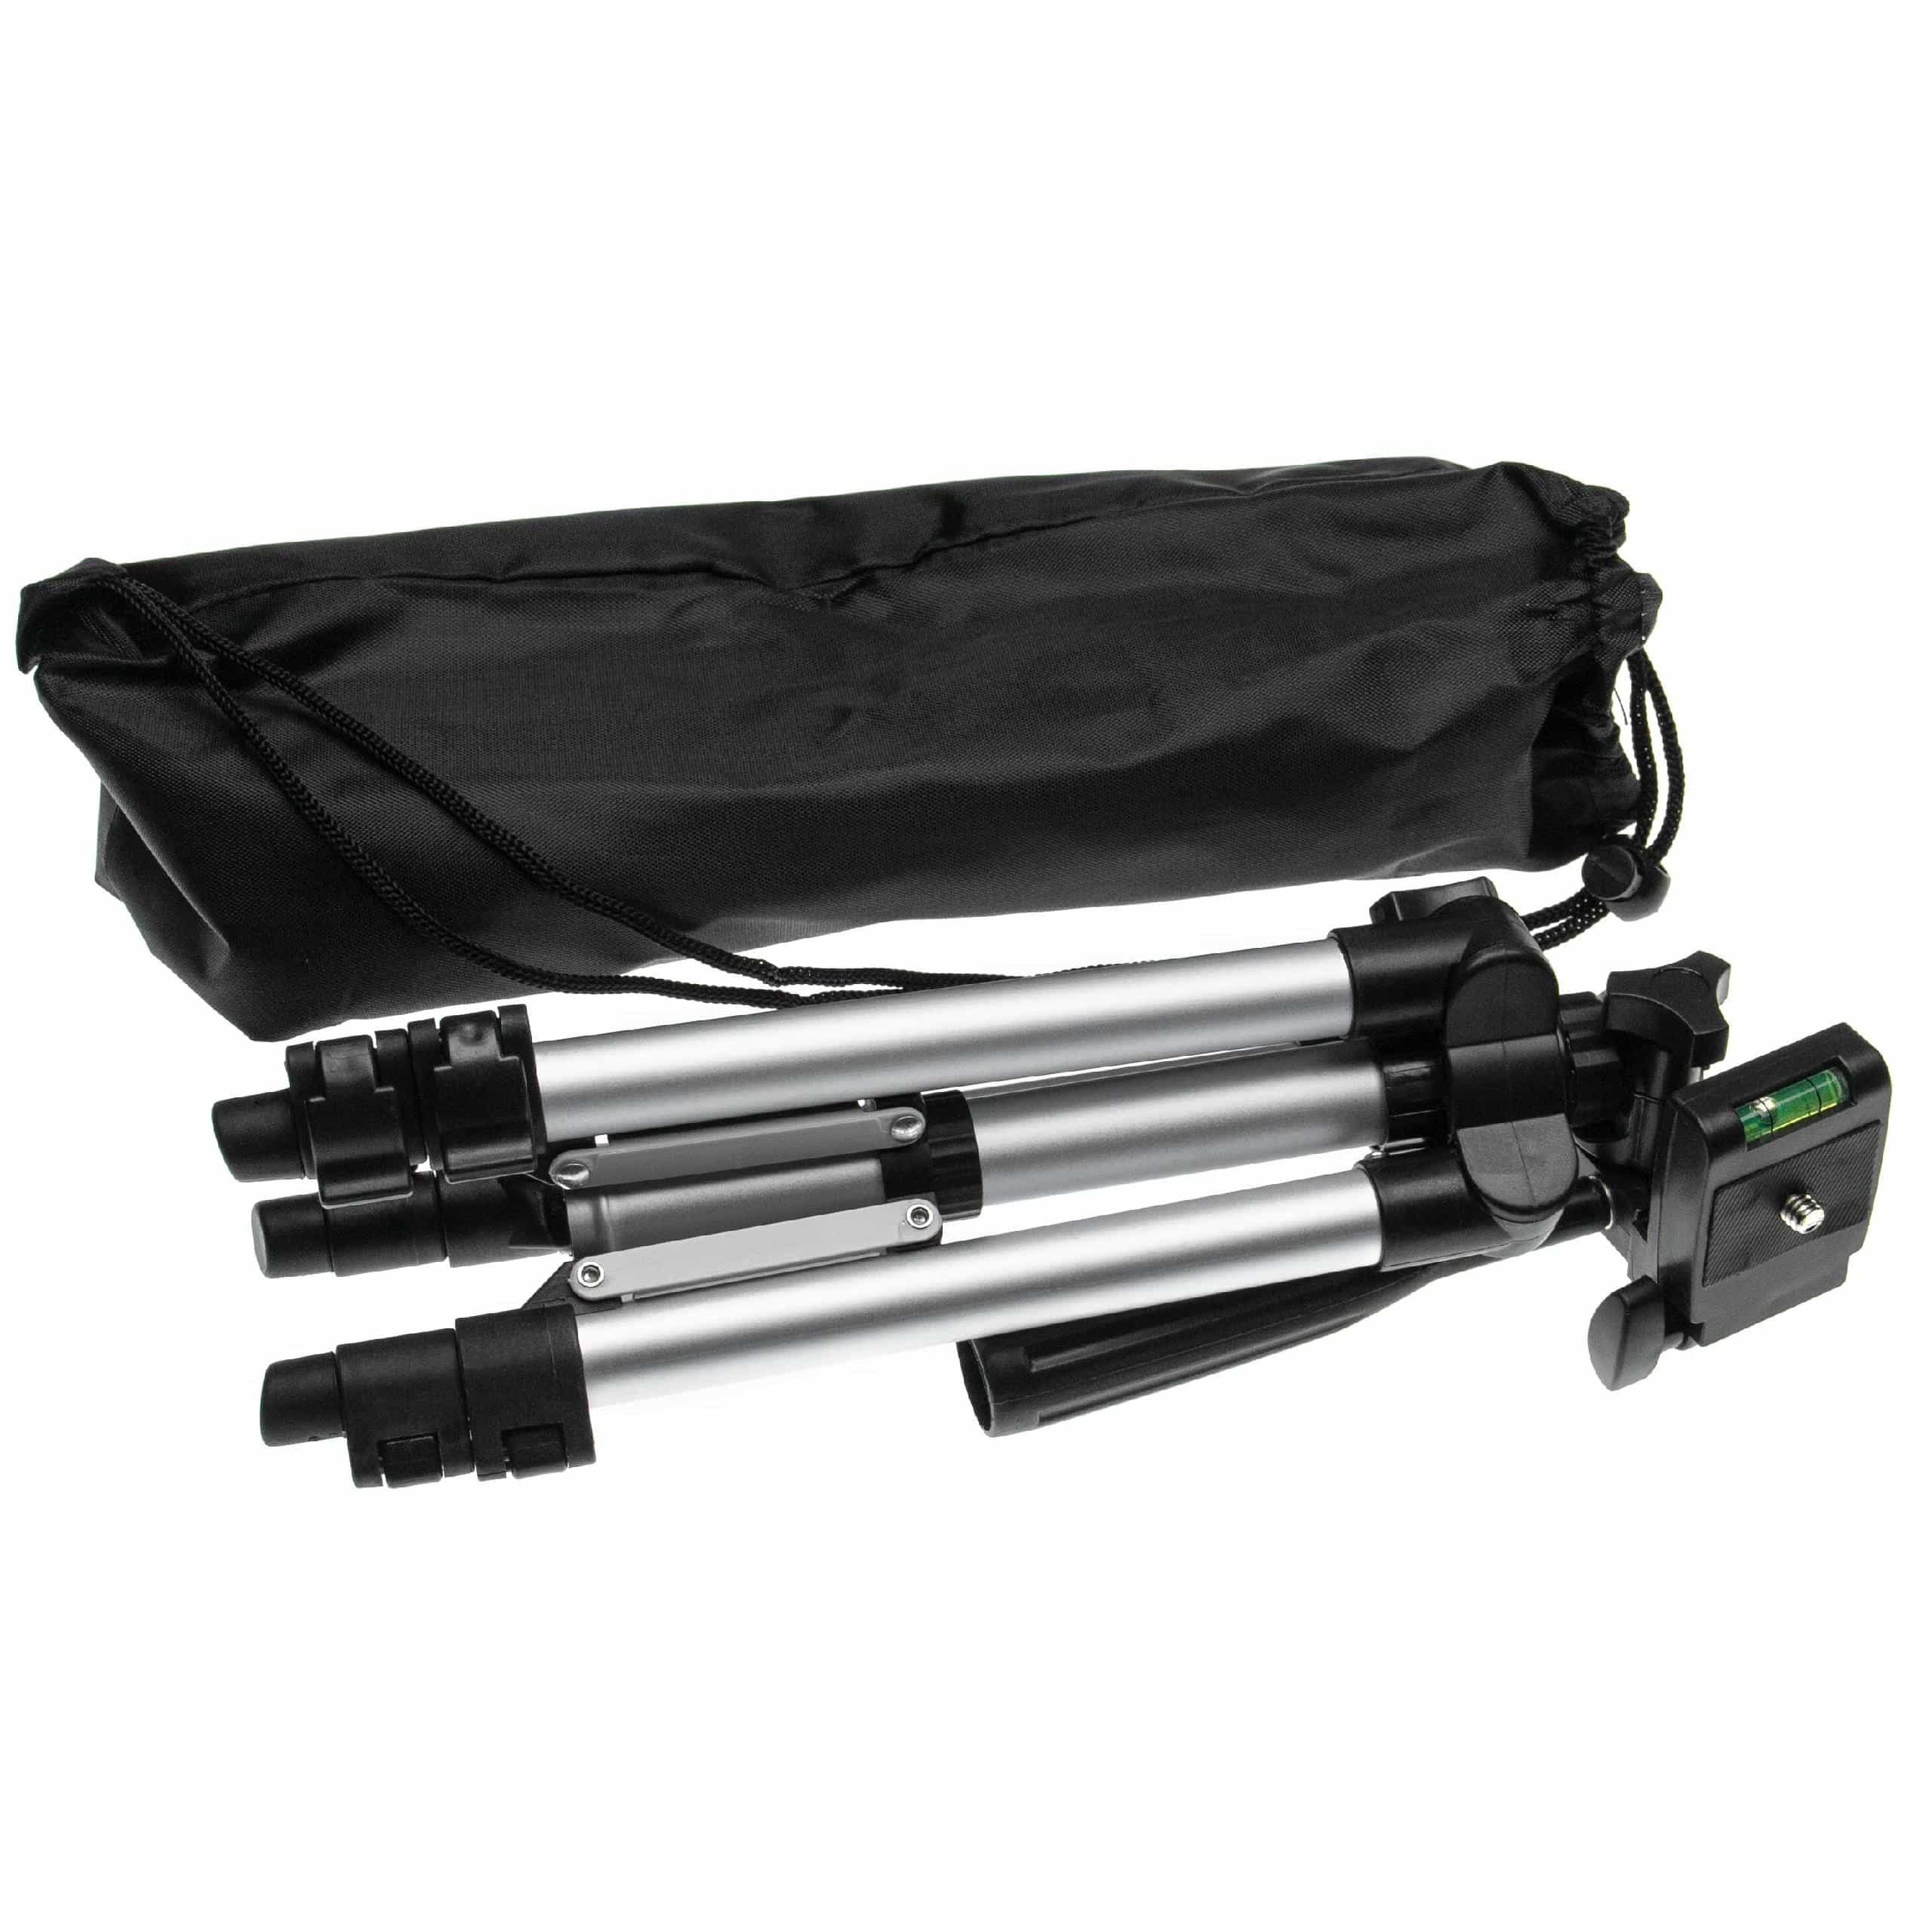 Kamerastativ, Fotostativ passend für Kamera - Inkl. Aufbewahrungstasche, 30 - 65 cm, Max. 2 kg